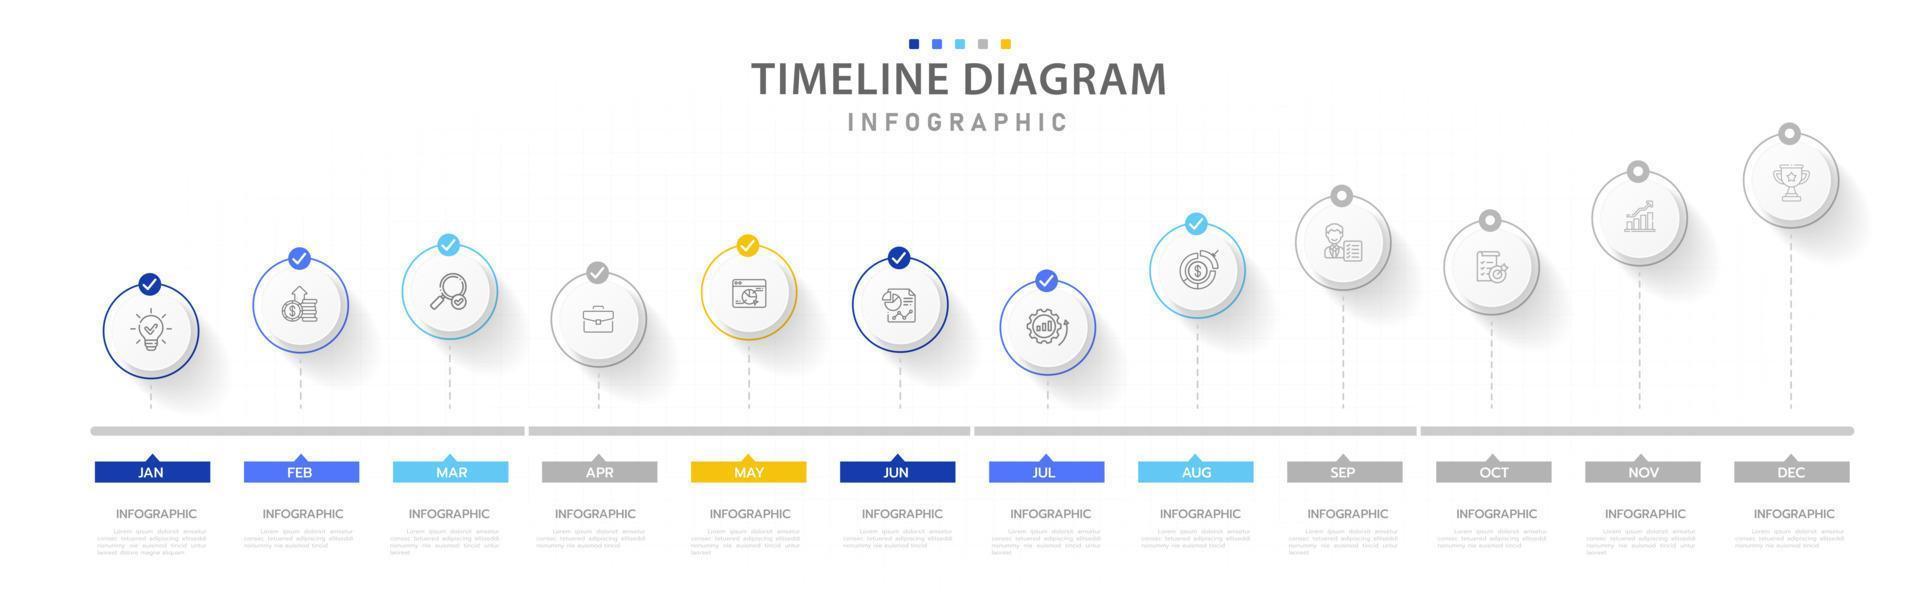 modèle d'infographie pour les entreprises. Calendrier de diagramme de chronologie moderne de 12 mois, infographie vectorielle de présentation. vecteur